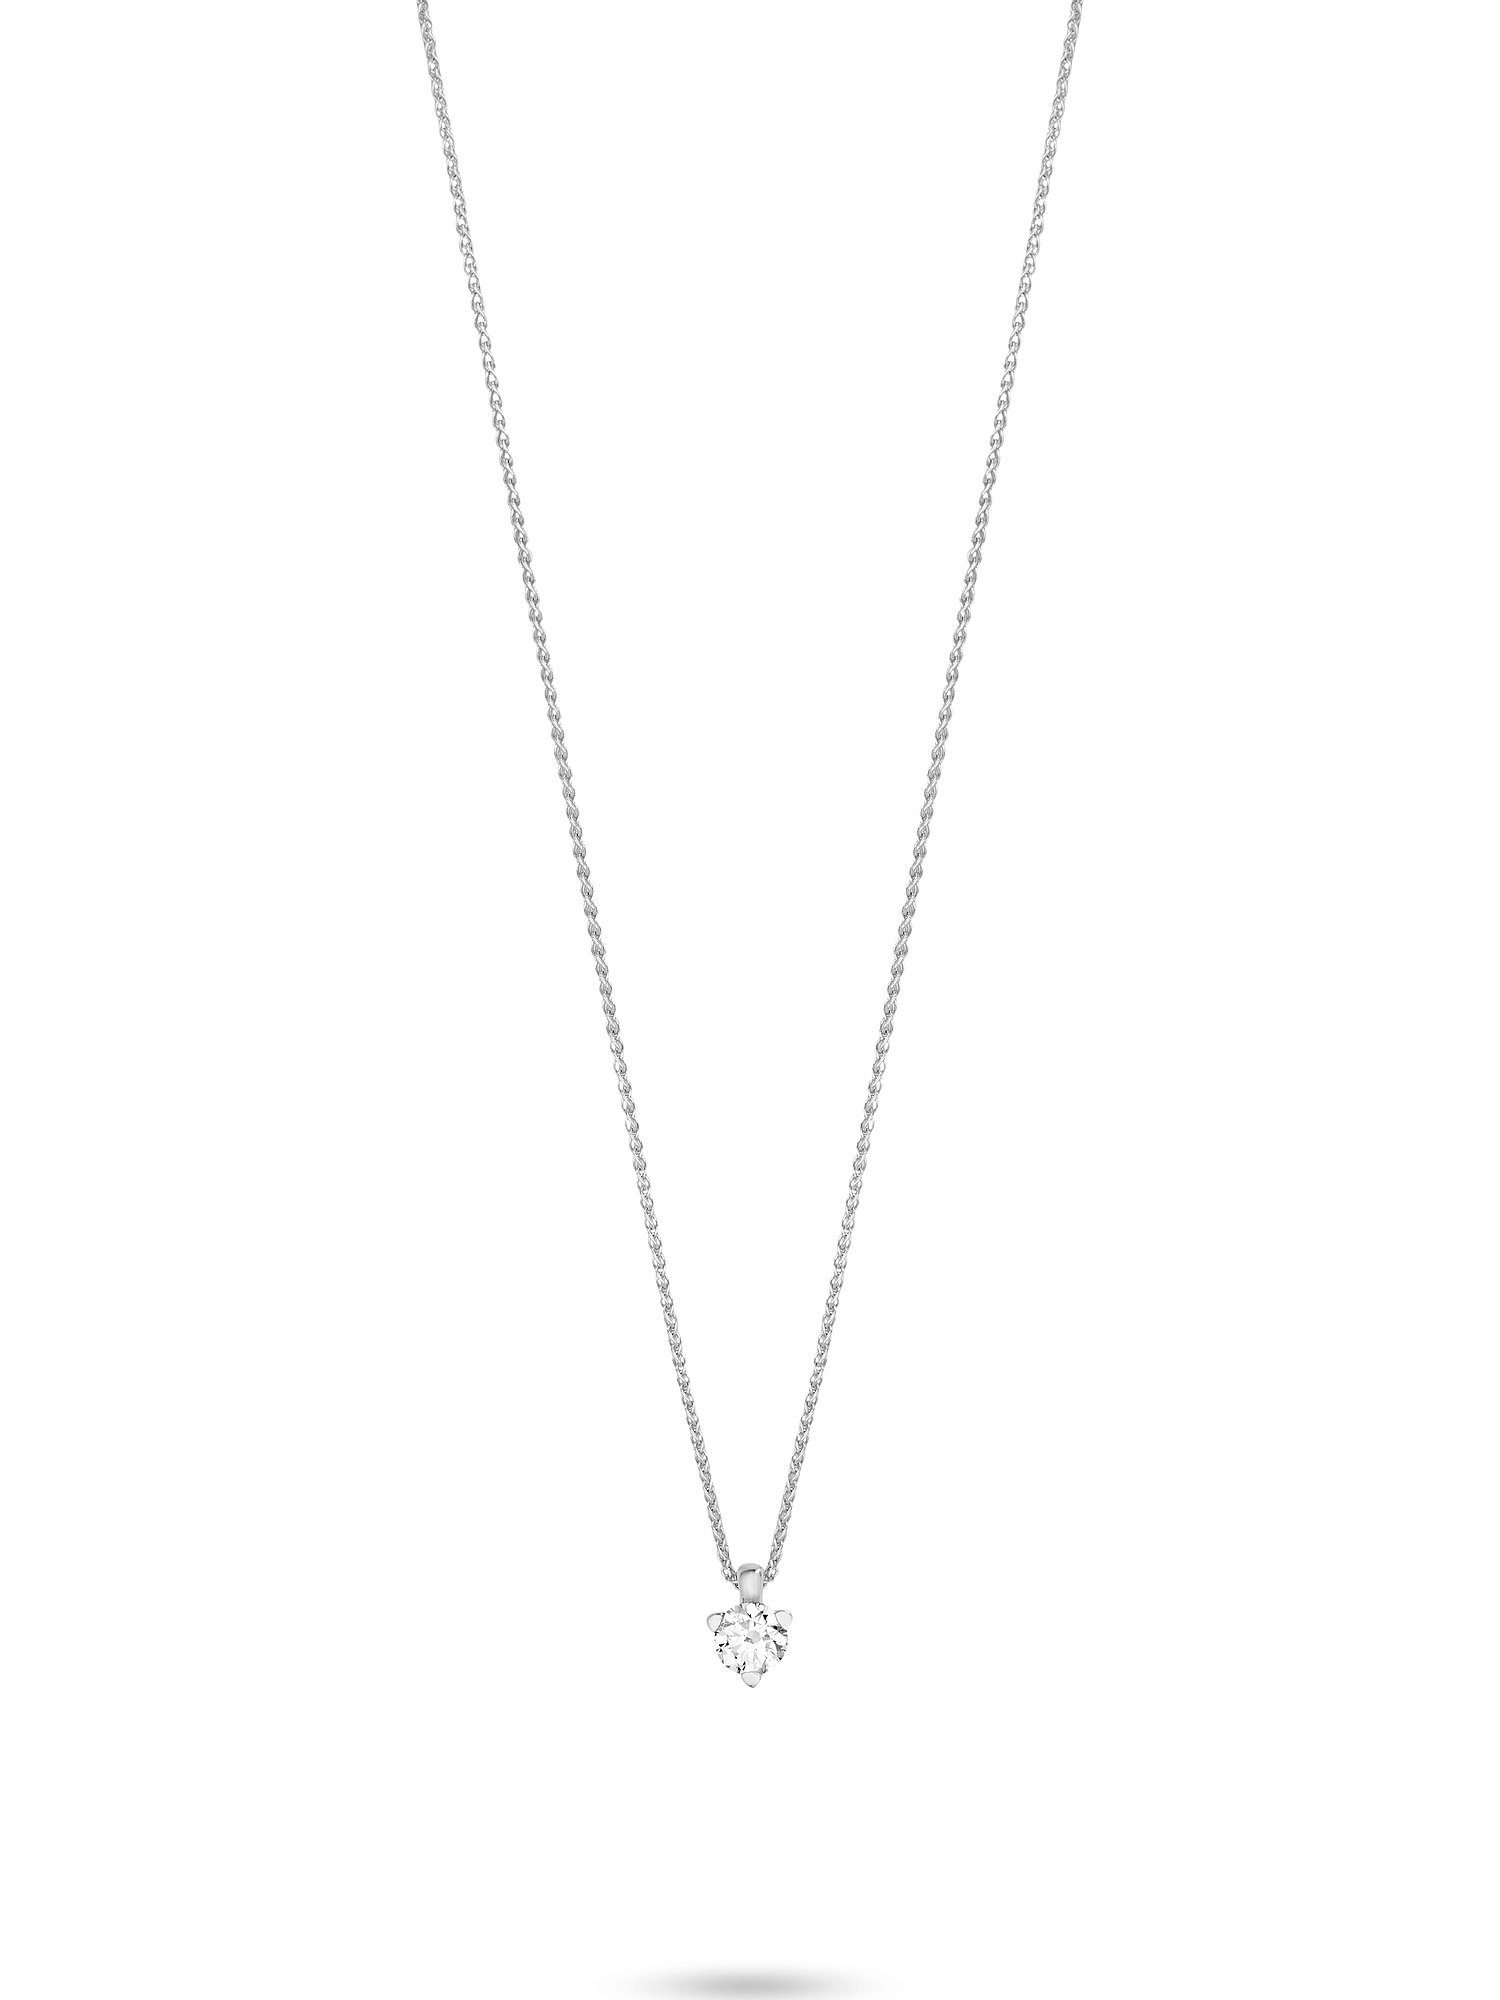 Versandhandelsseite CHRIST Collier weißgold CHRIST Damen-Kette 1 Diamant